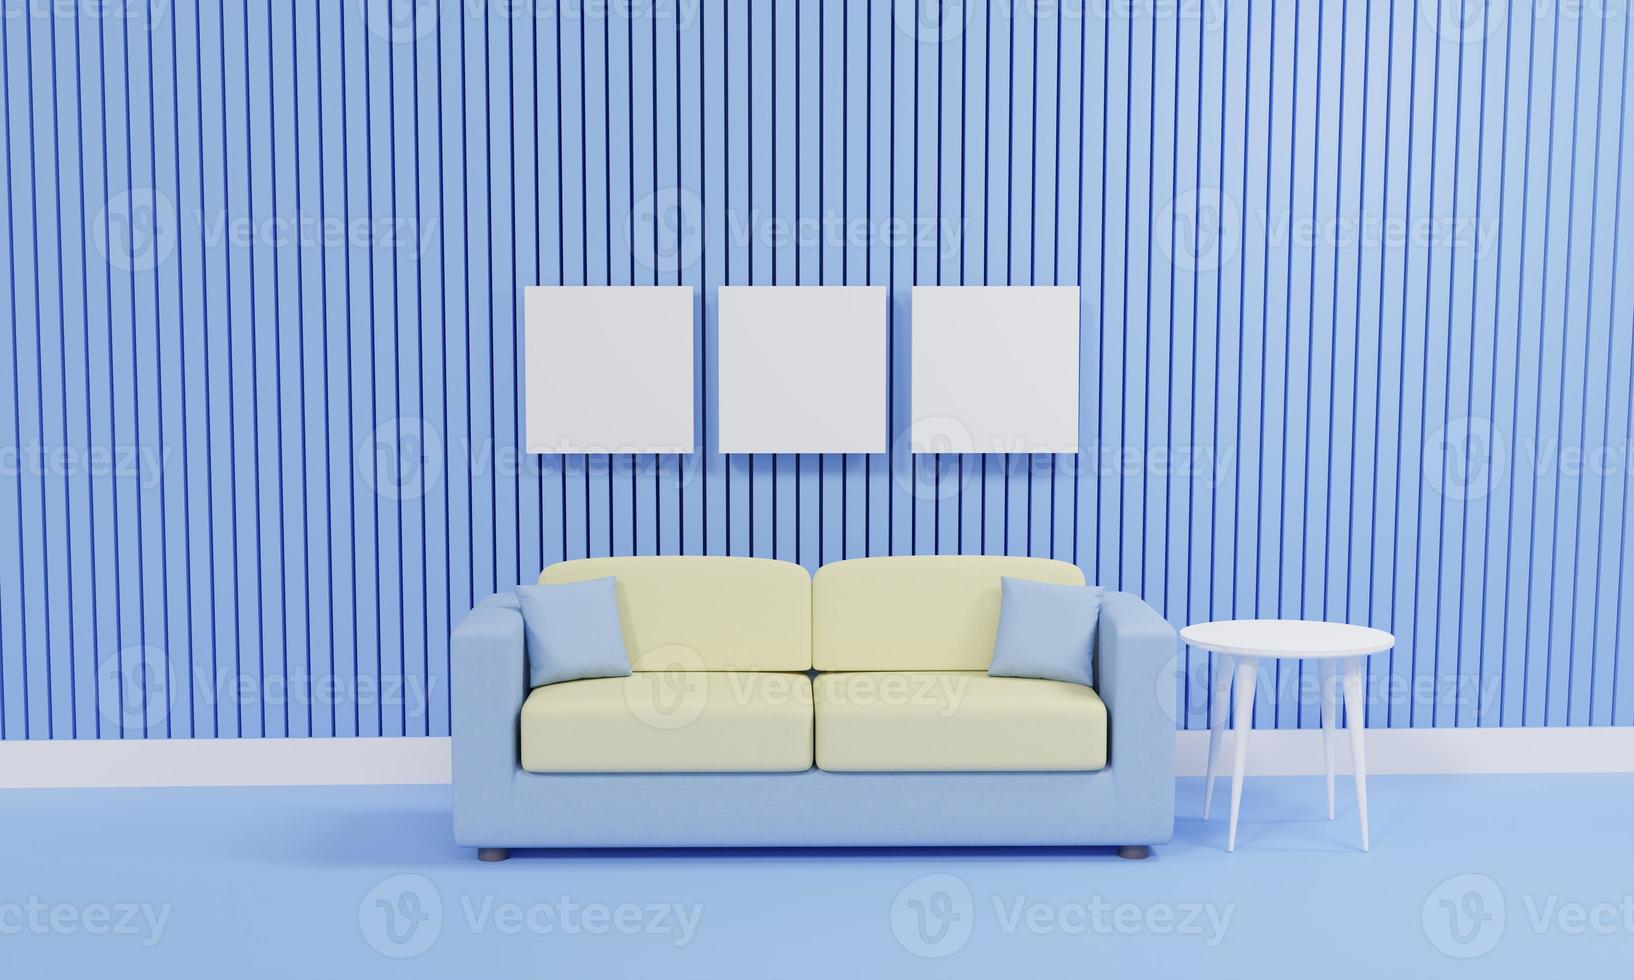 minimalistiskt vardagsrum med soffa mot blå vägg, 3d-rendering foto